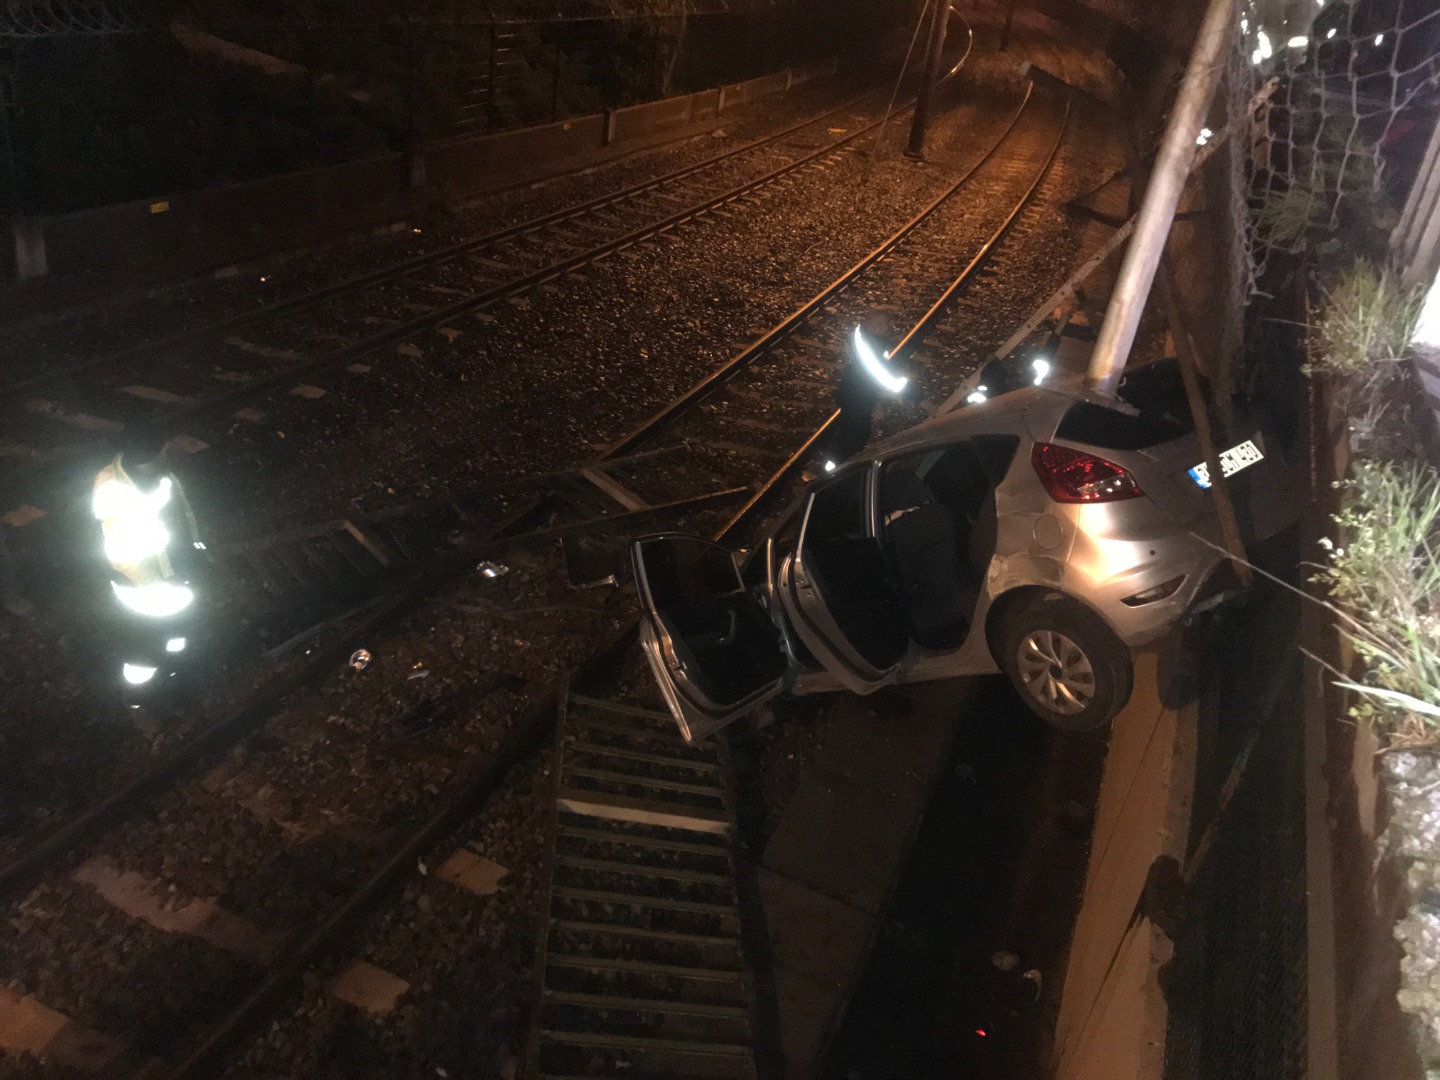 Bakırköy’de kontrolden çıkan araç metro yoluna uçtu: 2 yaralı